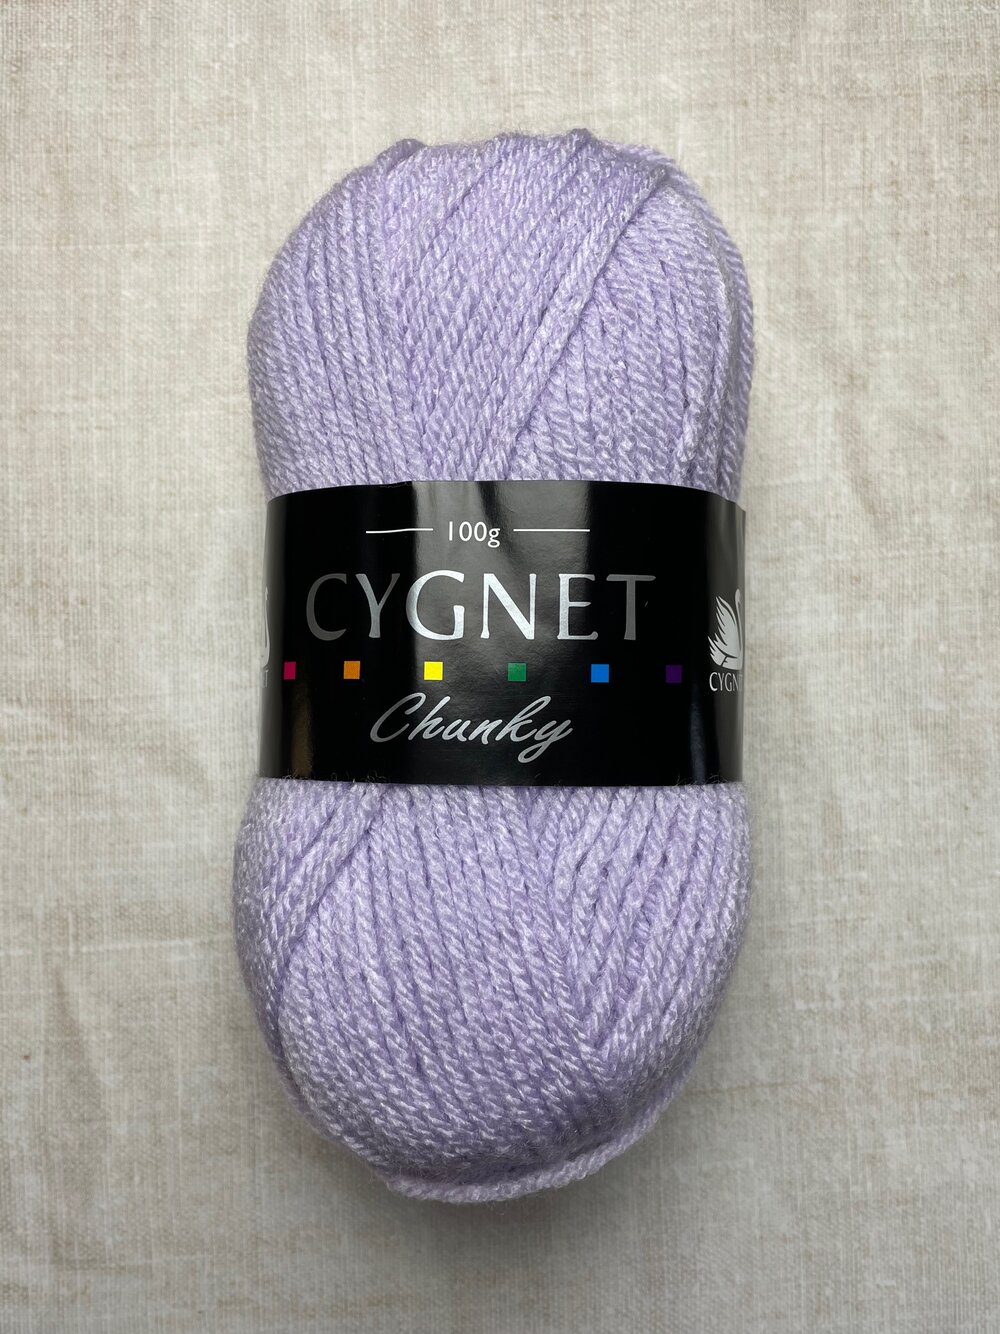 Cygnet Cotton Drops